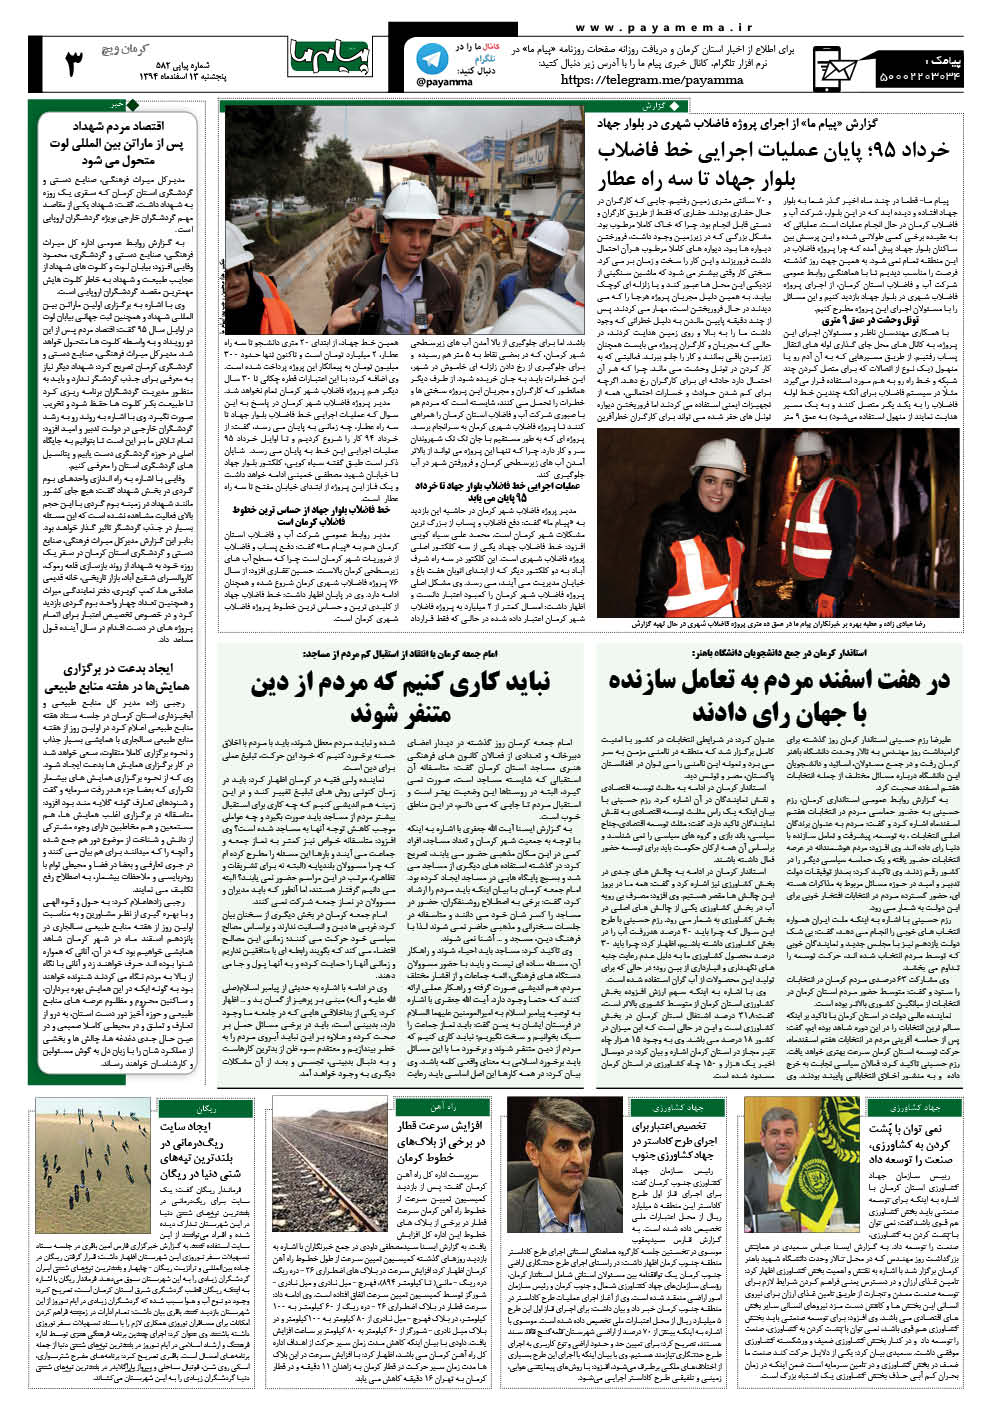 صفحه کرمان ویج شماره 582 روزنامه پیام ما